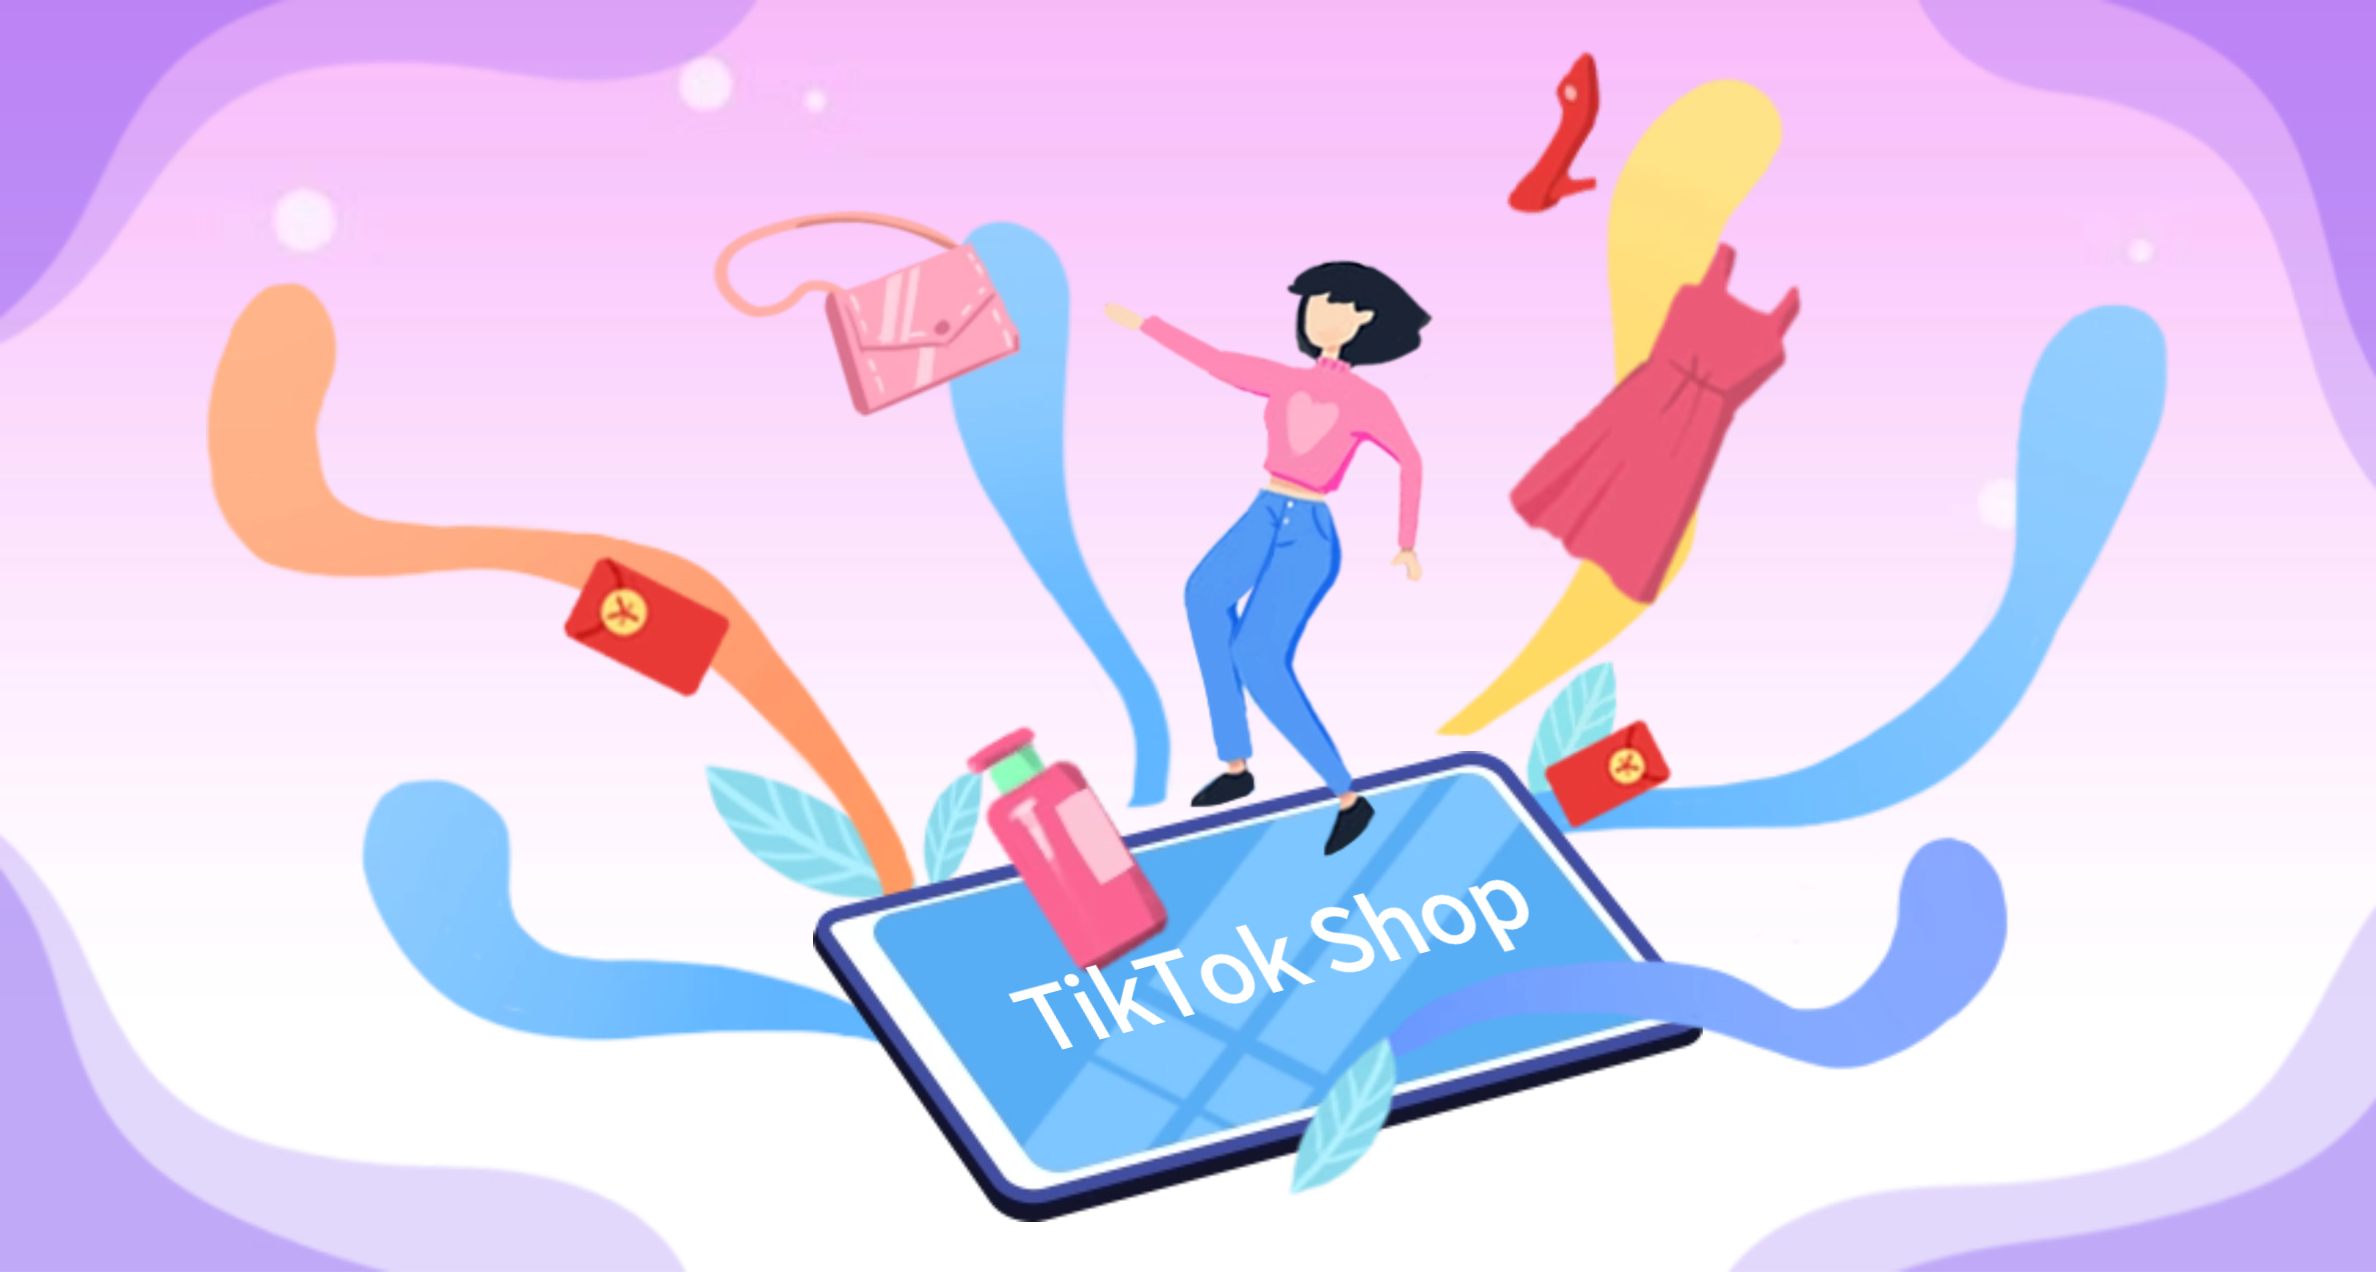 上月TikTok Shop印尼站销售额达1.1万亿印尼盾